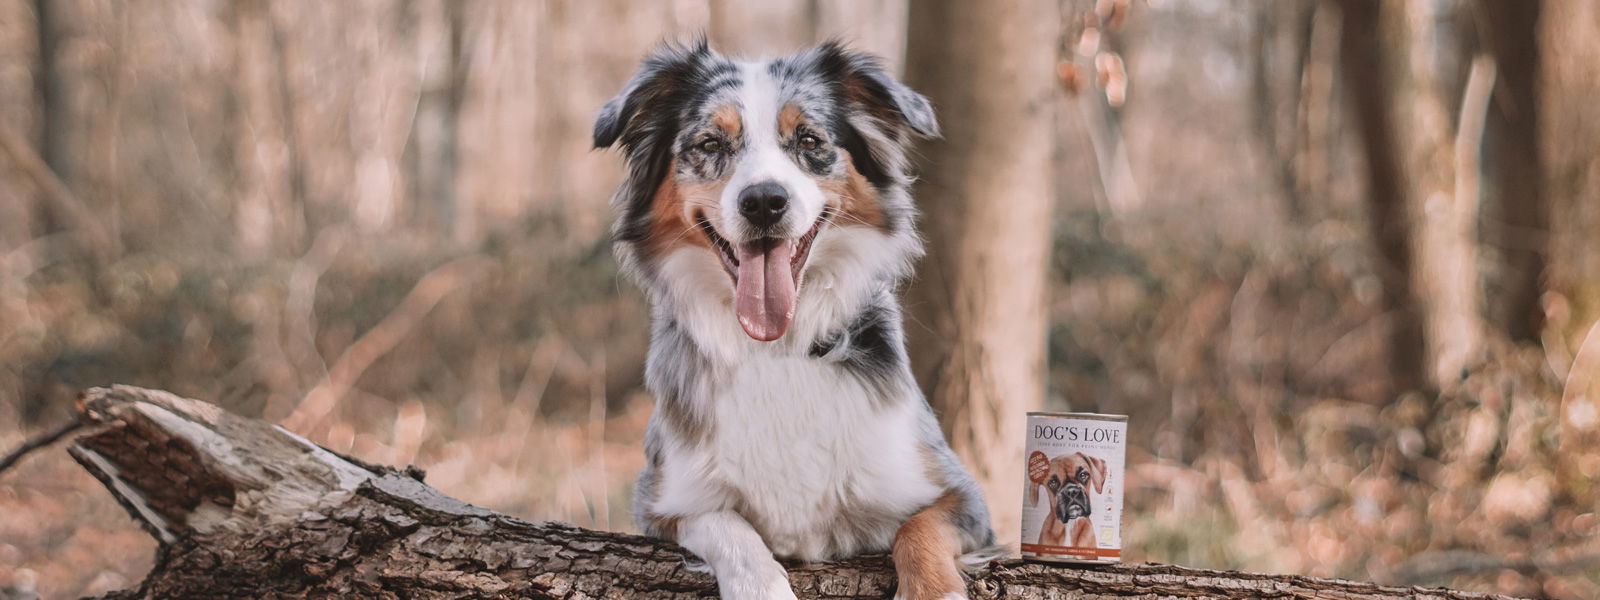 Un chien qui laisse pendre ses pattes sur un arbre tombé et à côté duquel se trouve une boîte de nourriture bio DOG'S LOVE.